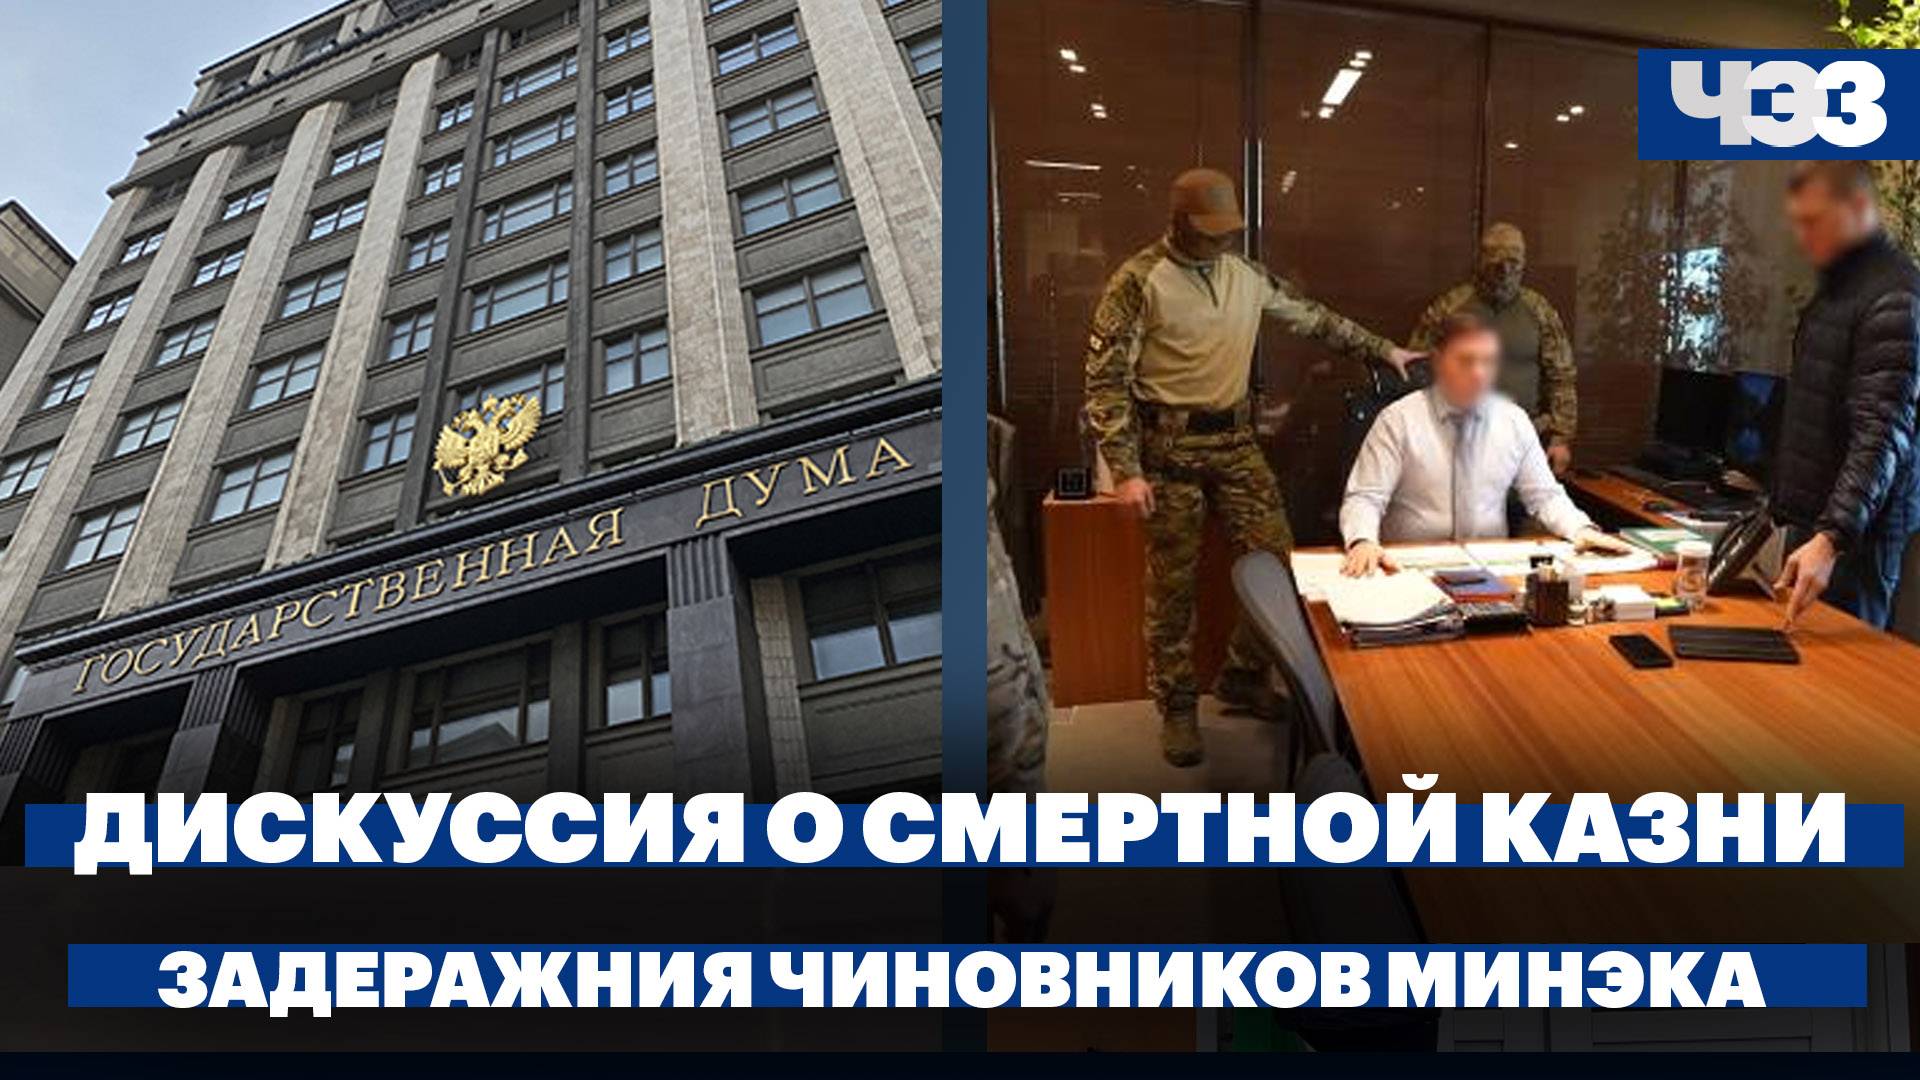 В Госдуме обсудили возвращение смертной казни, чиновников Минэка задержали по делу о рейдерстве